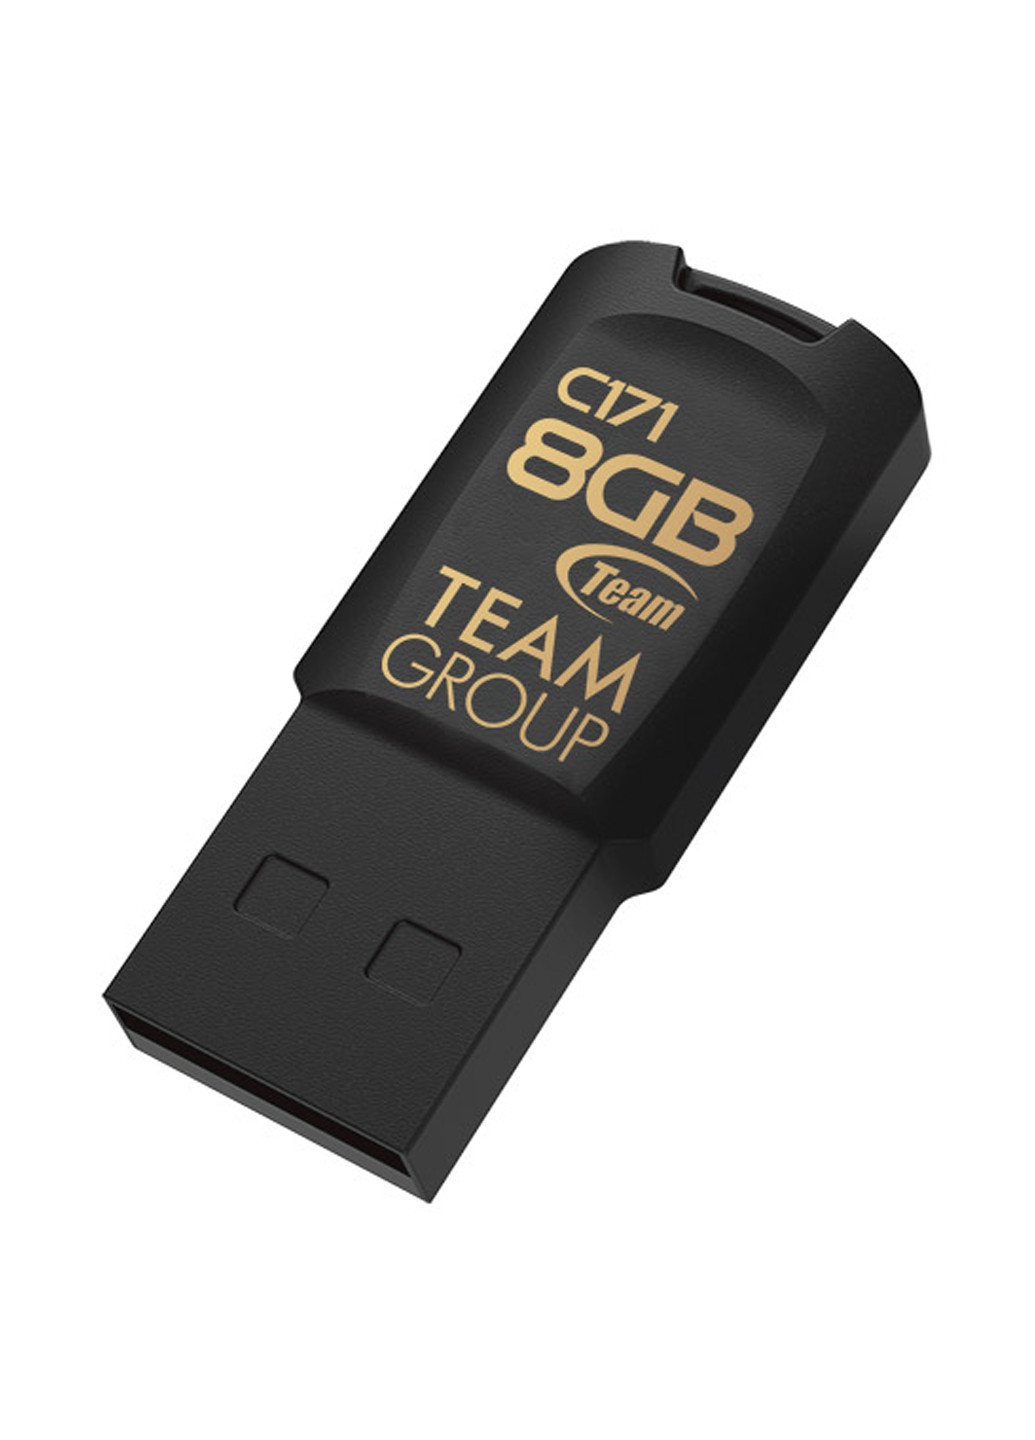 Флеш память USB C171 8GB Black (TC1718GB01) Team флеш память usb team c171 8gb black (tc1718gb01) (134201650)